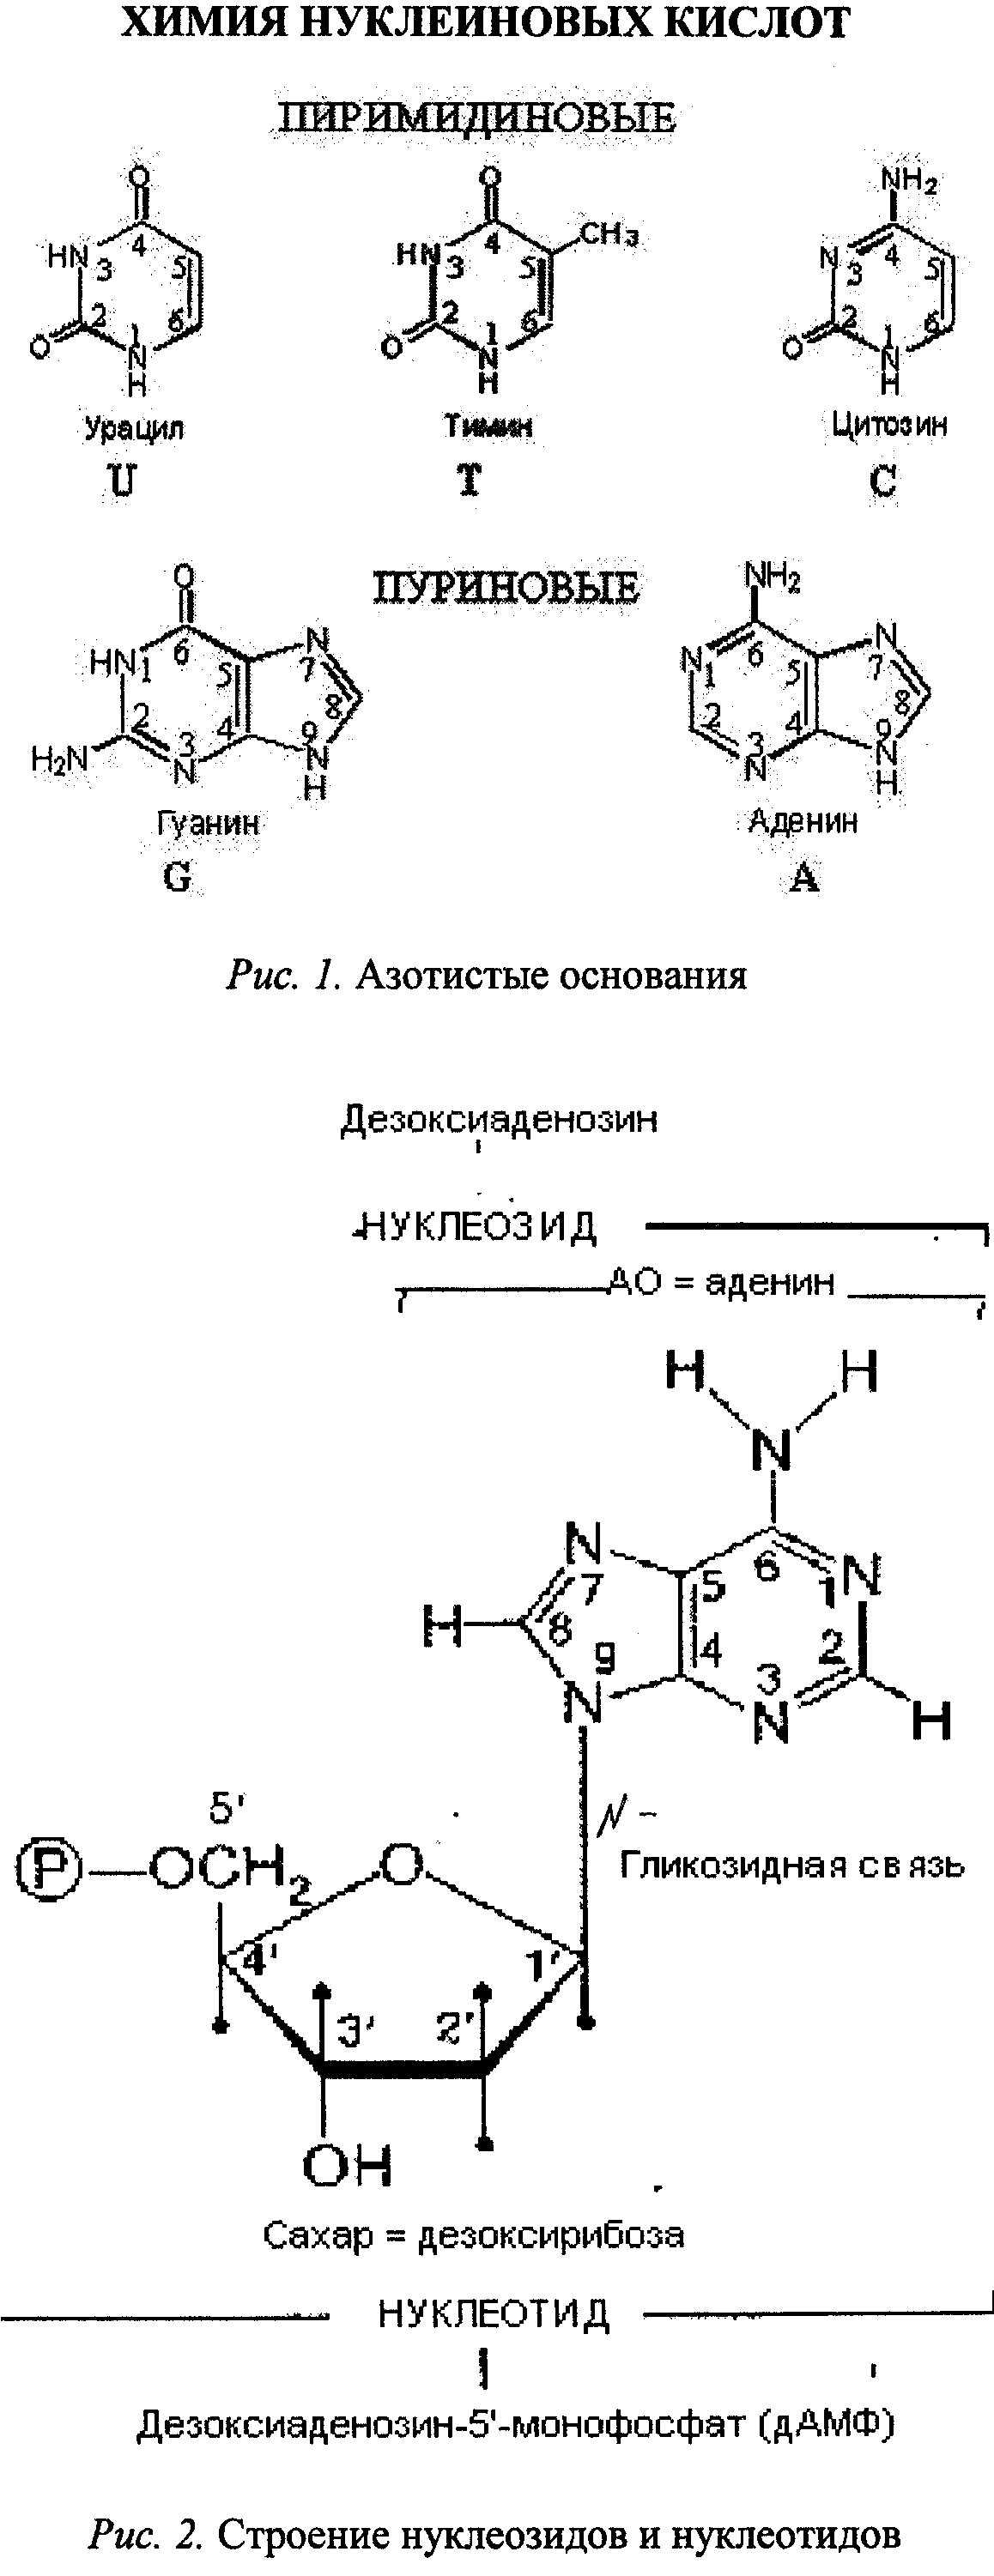 Азотистые основания нуклеиновых кислот. Пуриновые азотистые основания РНК. Пиримидиновые основания нуклеиновых кислот. Пуриновые и пиримидиновые основания РНК.